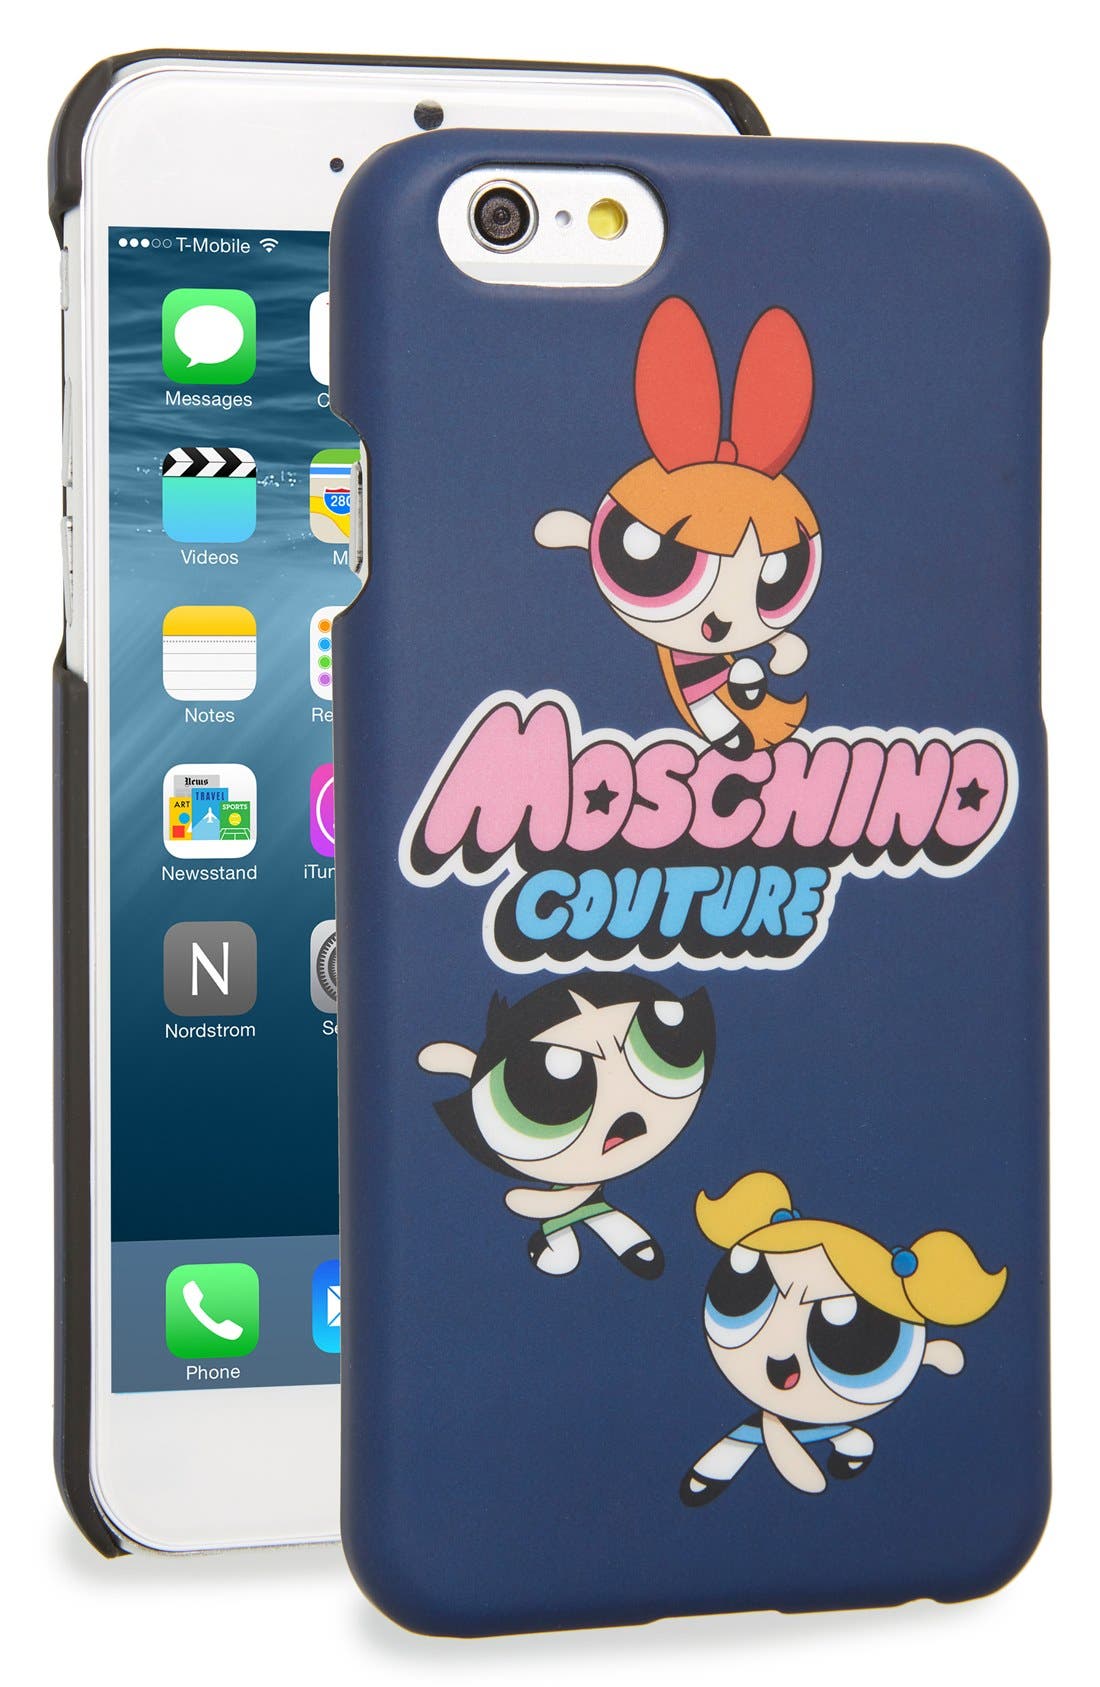 moschino powerpuff phone case